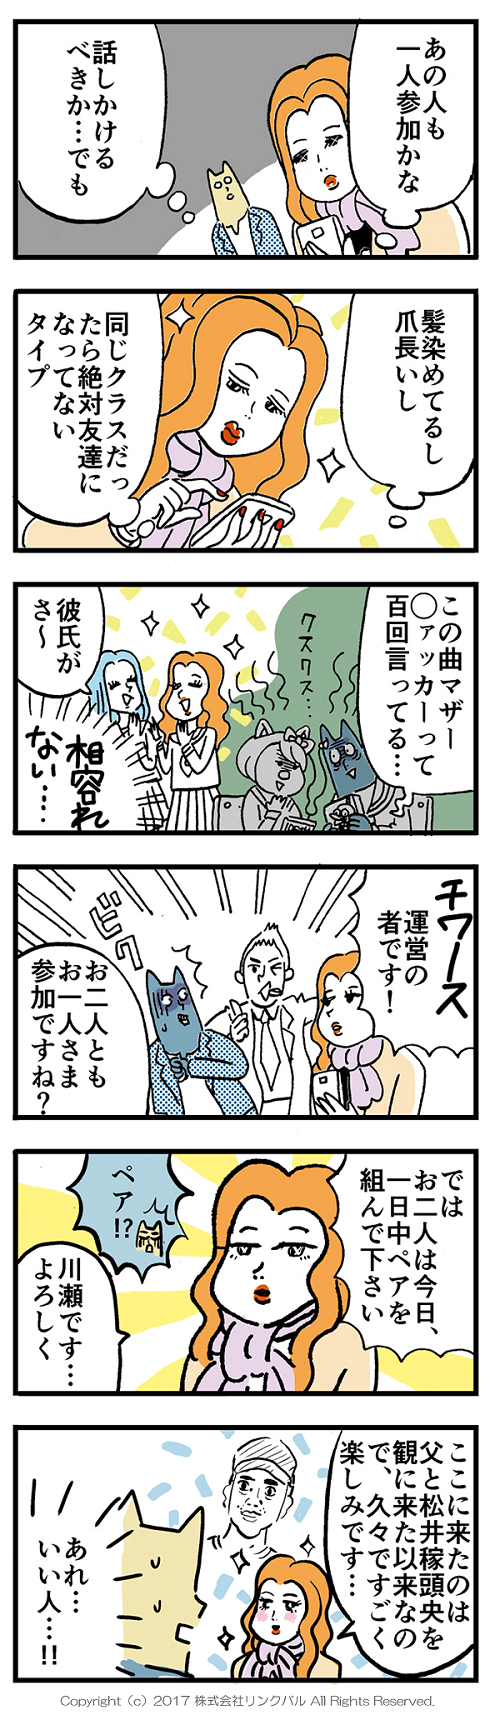 【婚活漫画】アラサー街コン物語・第8話「ペア」